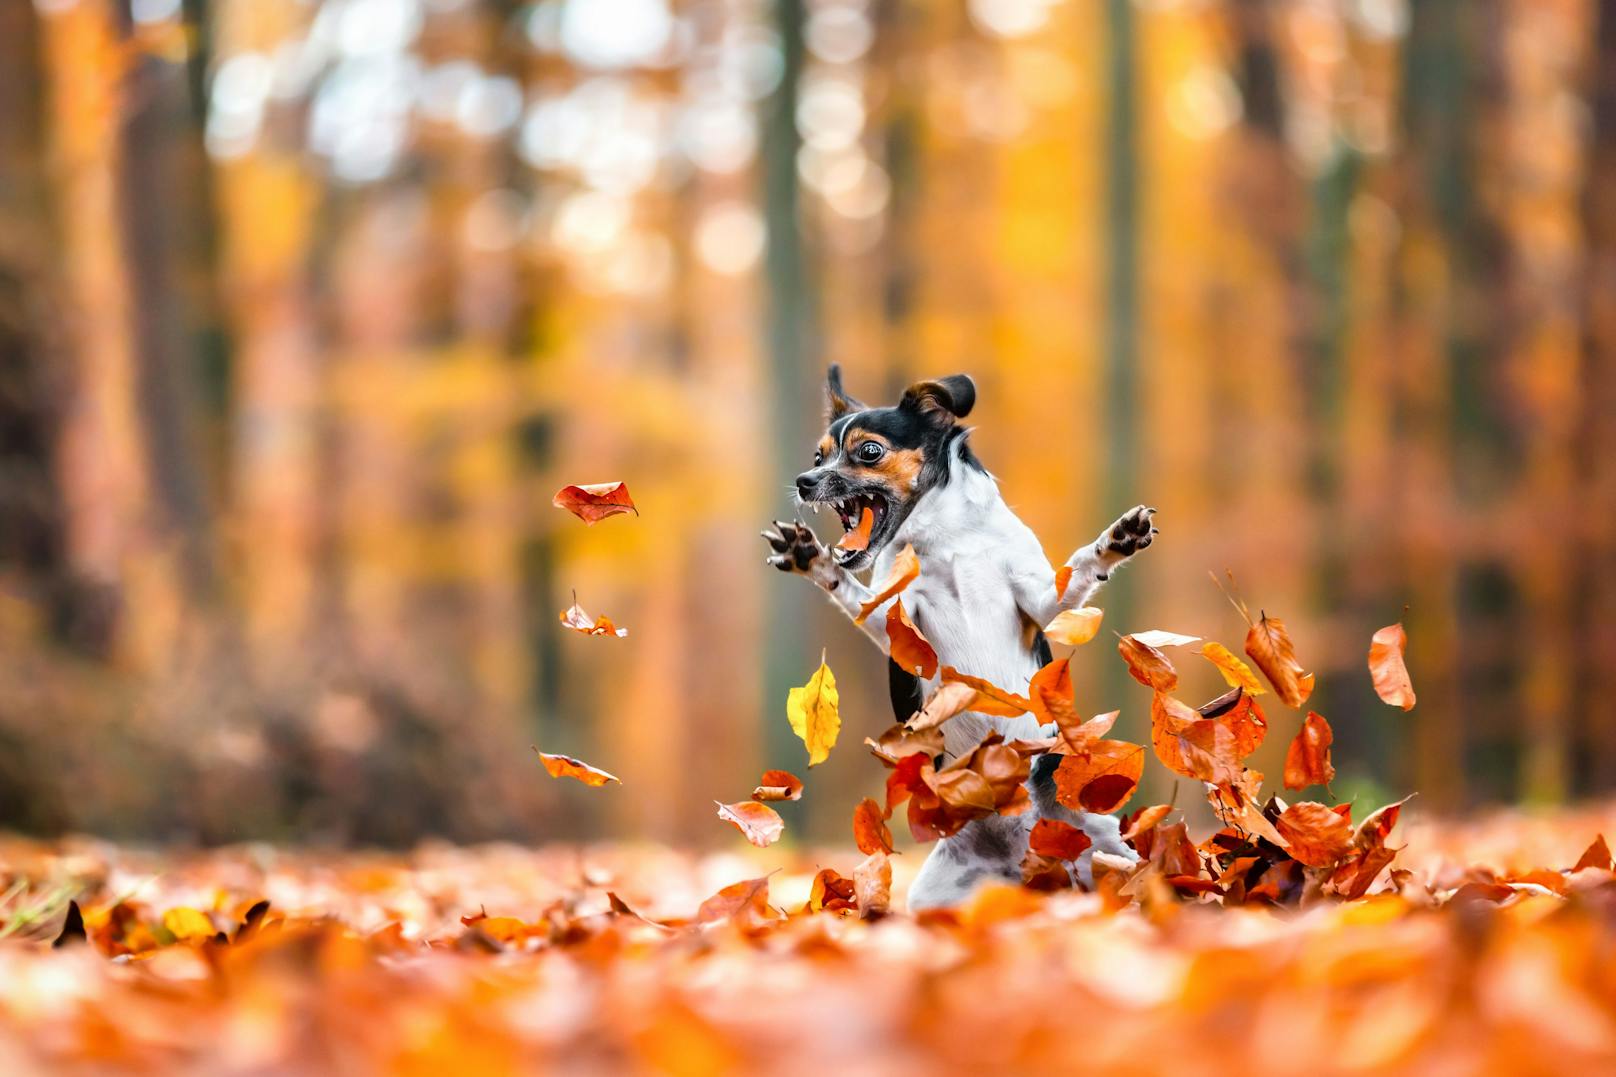 Titel: Crazy in love with fall, ©Diana Jill Mehner, Deutschland